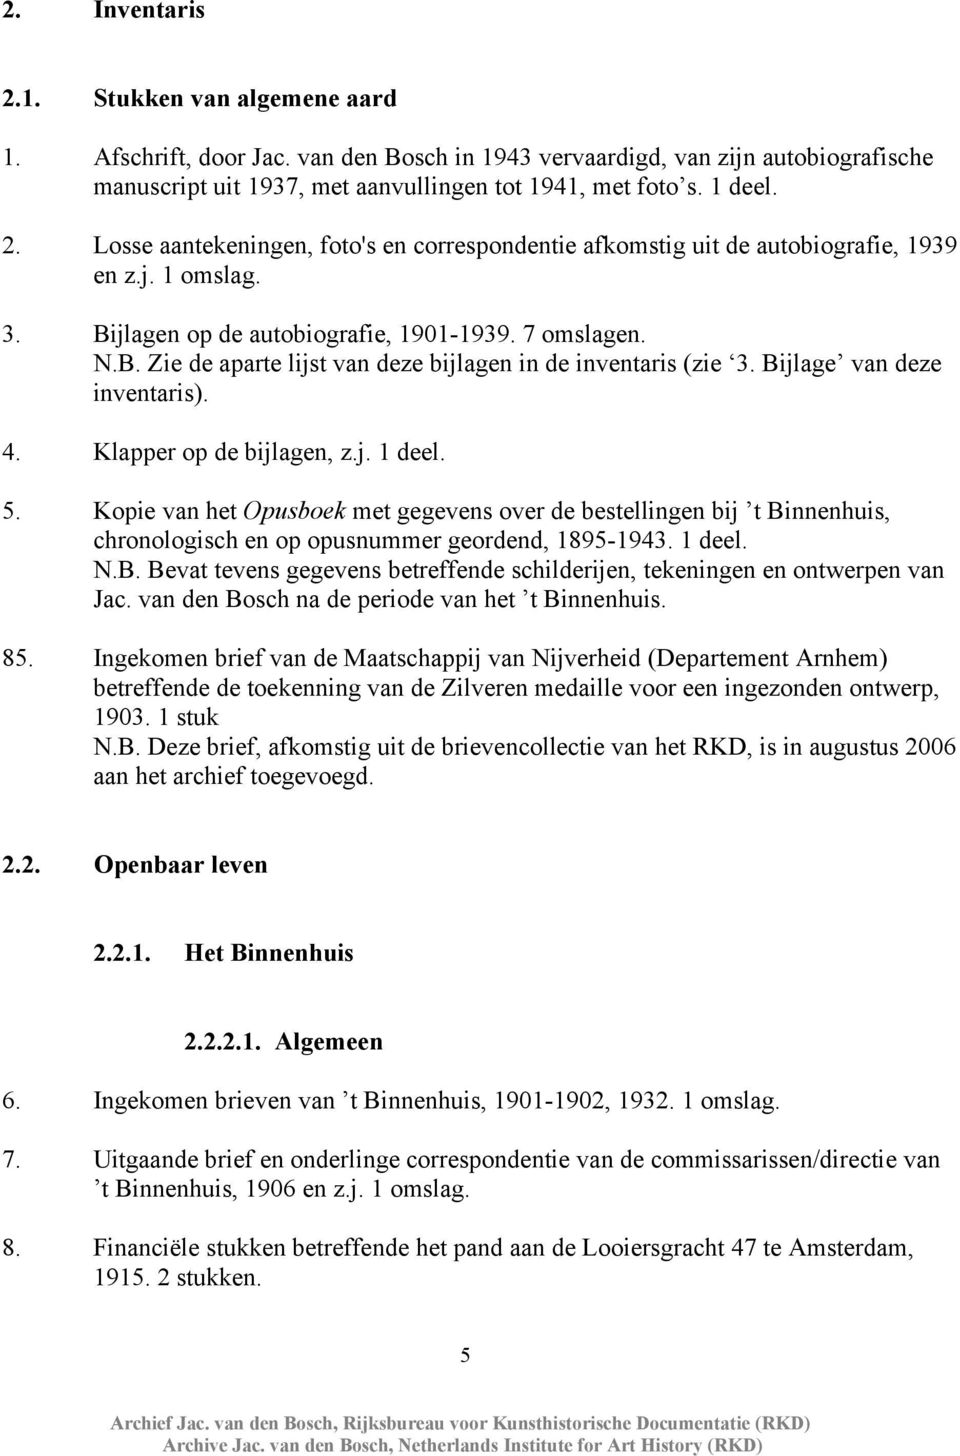 5. Kopie van het Opusboek met gegevens over de bestellingen bij t Binnenhuis, chronologisch en op opusnummer geordend, 1895-1943. 1 deel. N.B. Bevat tevens gegevens betreffende schilderijen, tekeningen en ontwerpen van Jac.